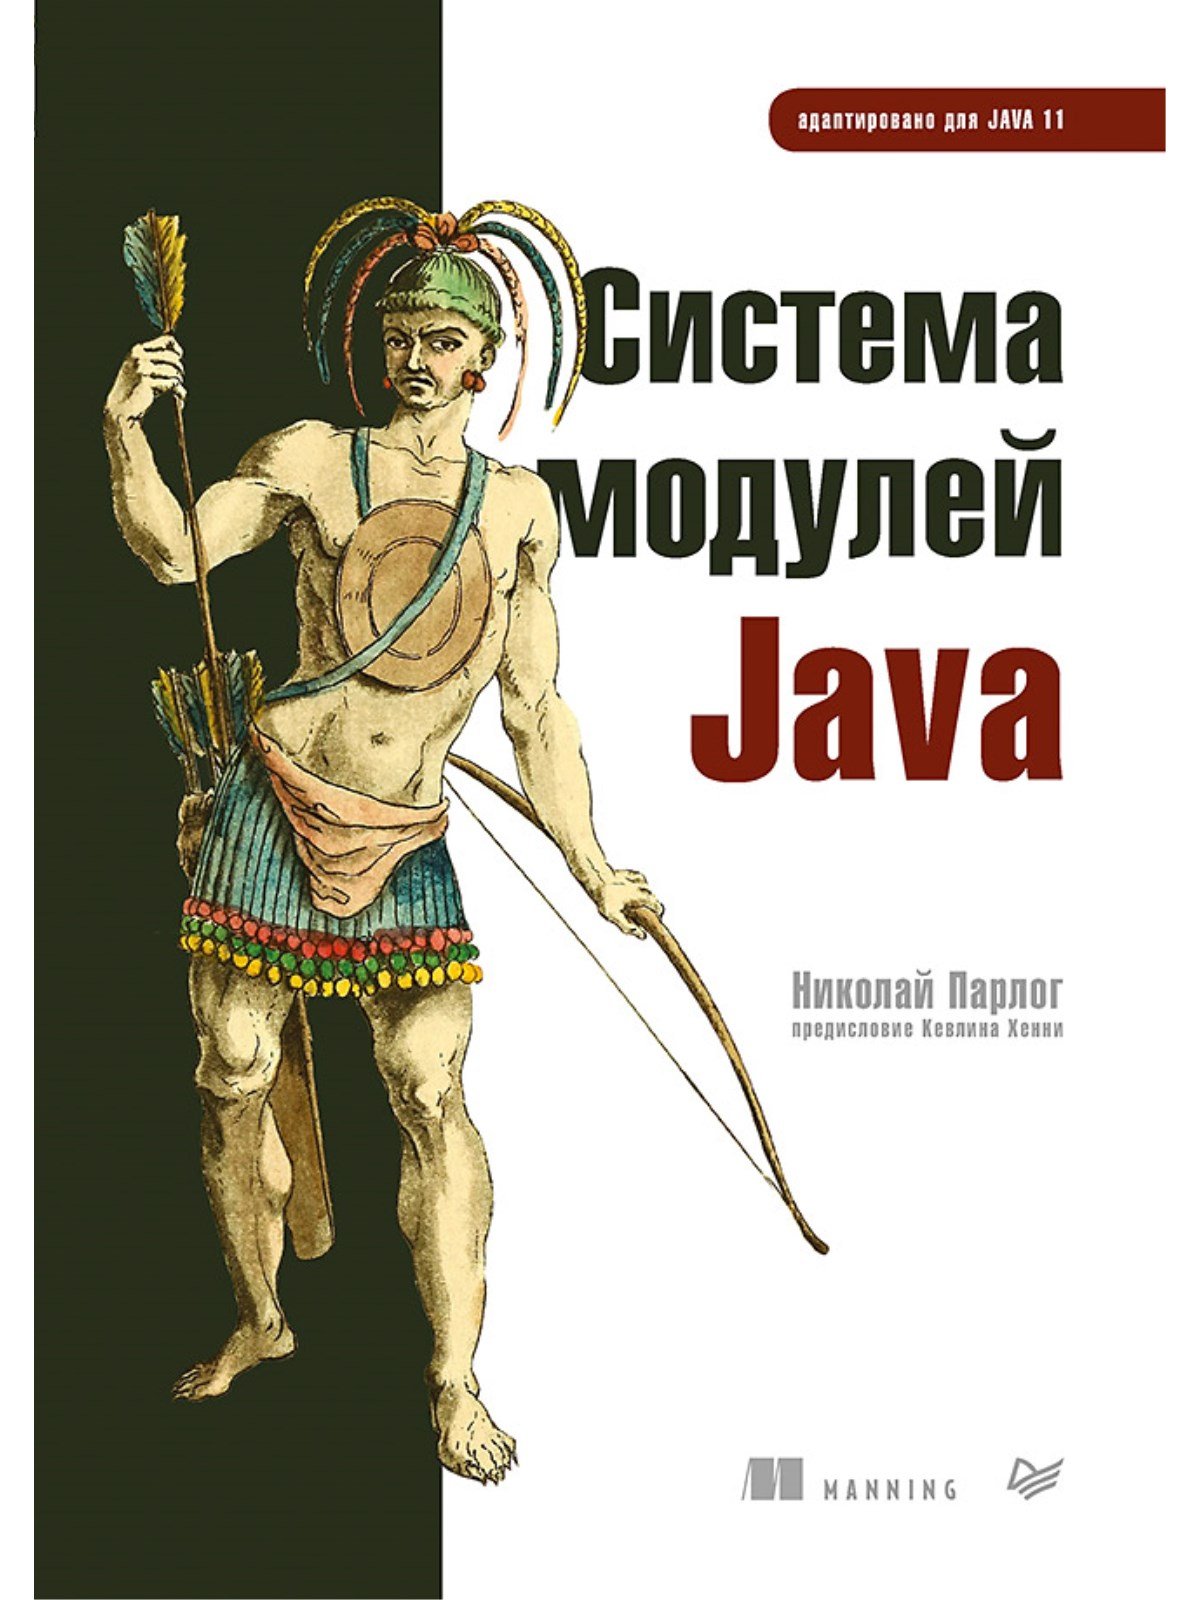   Java